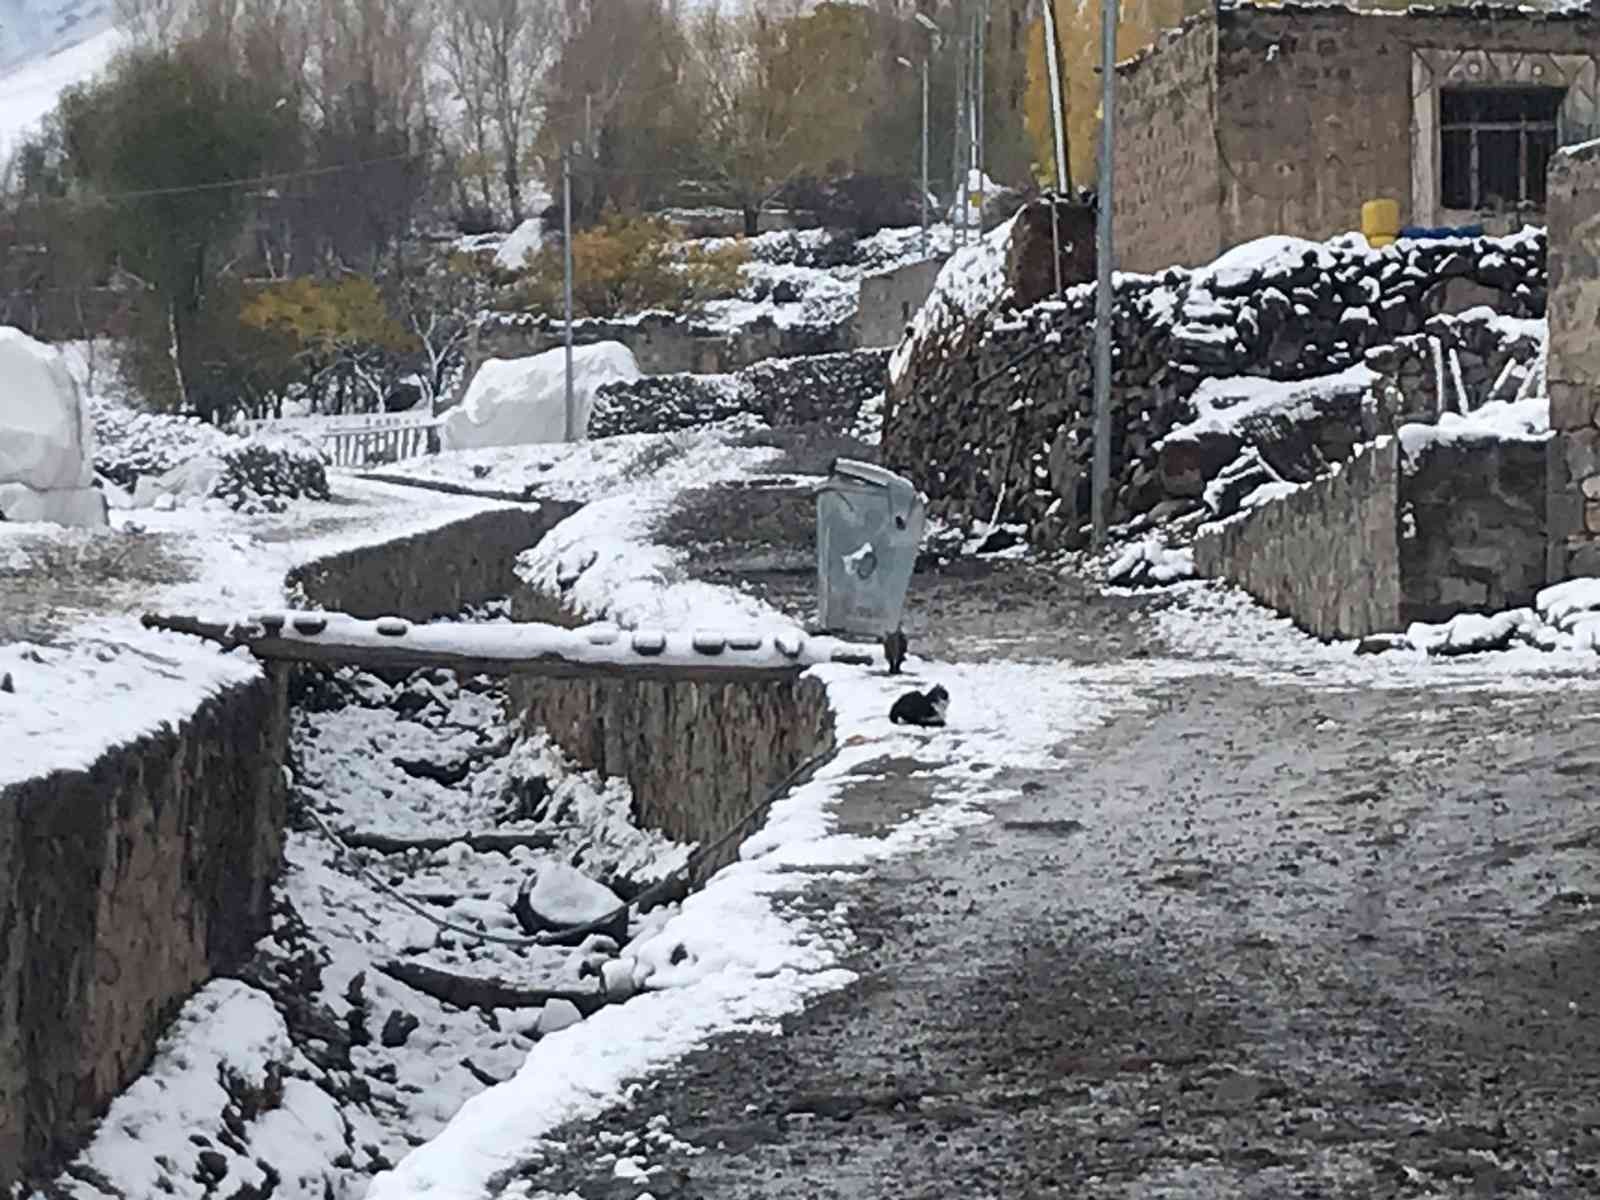 Iğdır’da kar ve tipi nedeniyle 2 köy yolu kapandı #igdir